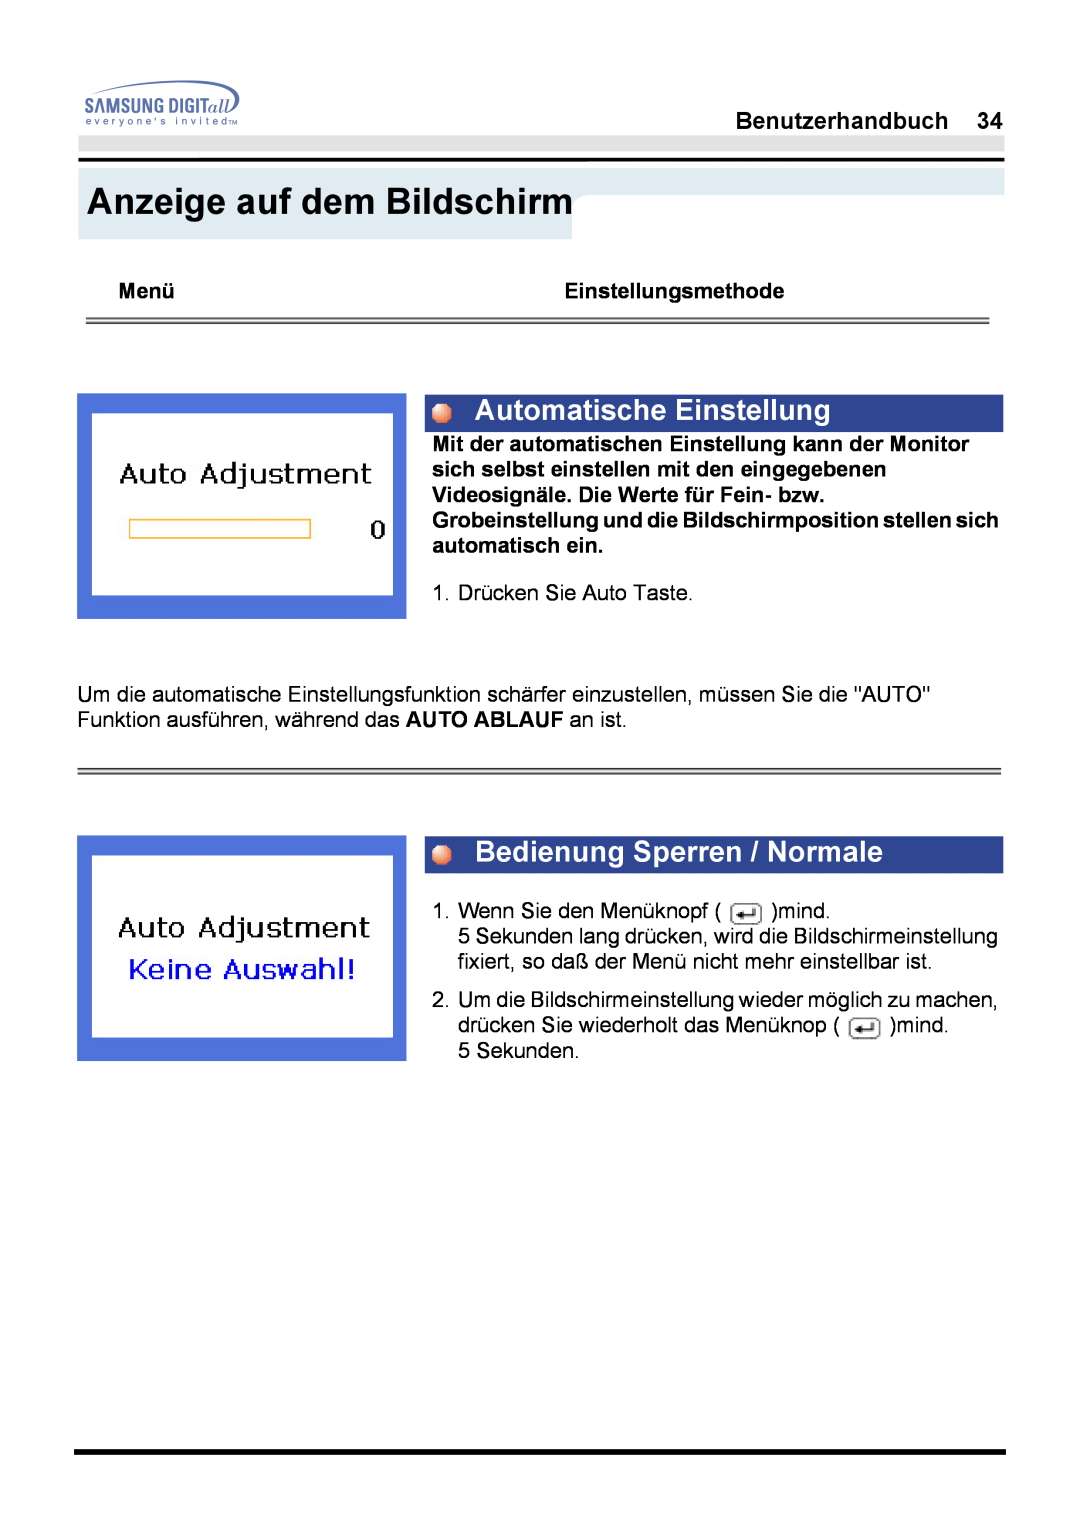 Samsung GH17LSSS manual Automatische Einstellung, Bedienung Sperren / Normale, Anzeige auf dem Bildschirm, Benutzerhandbuch 